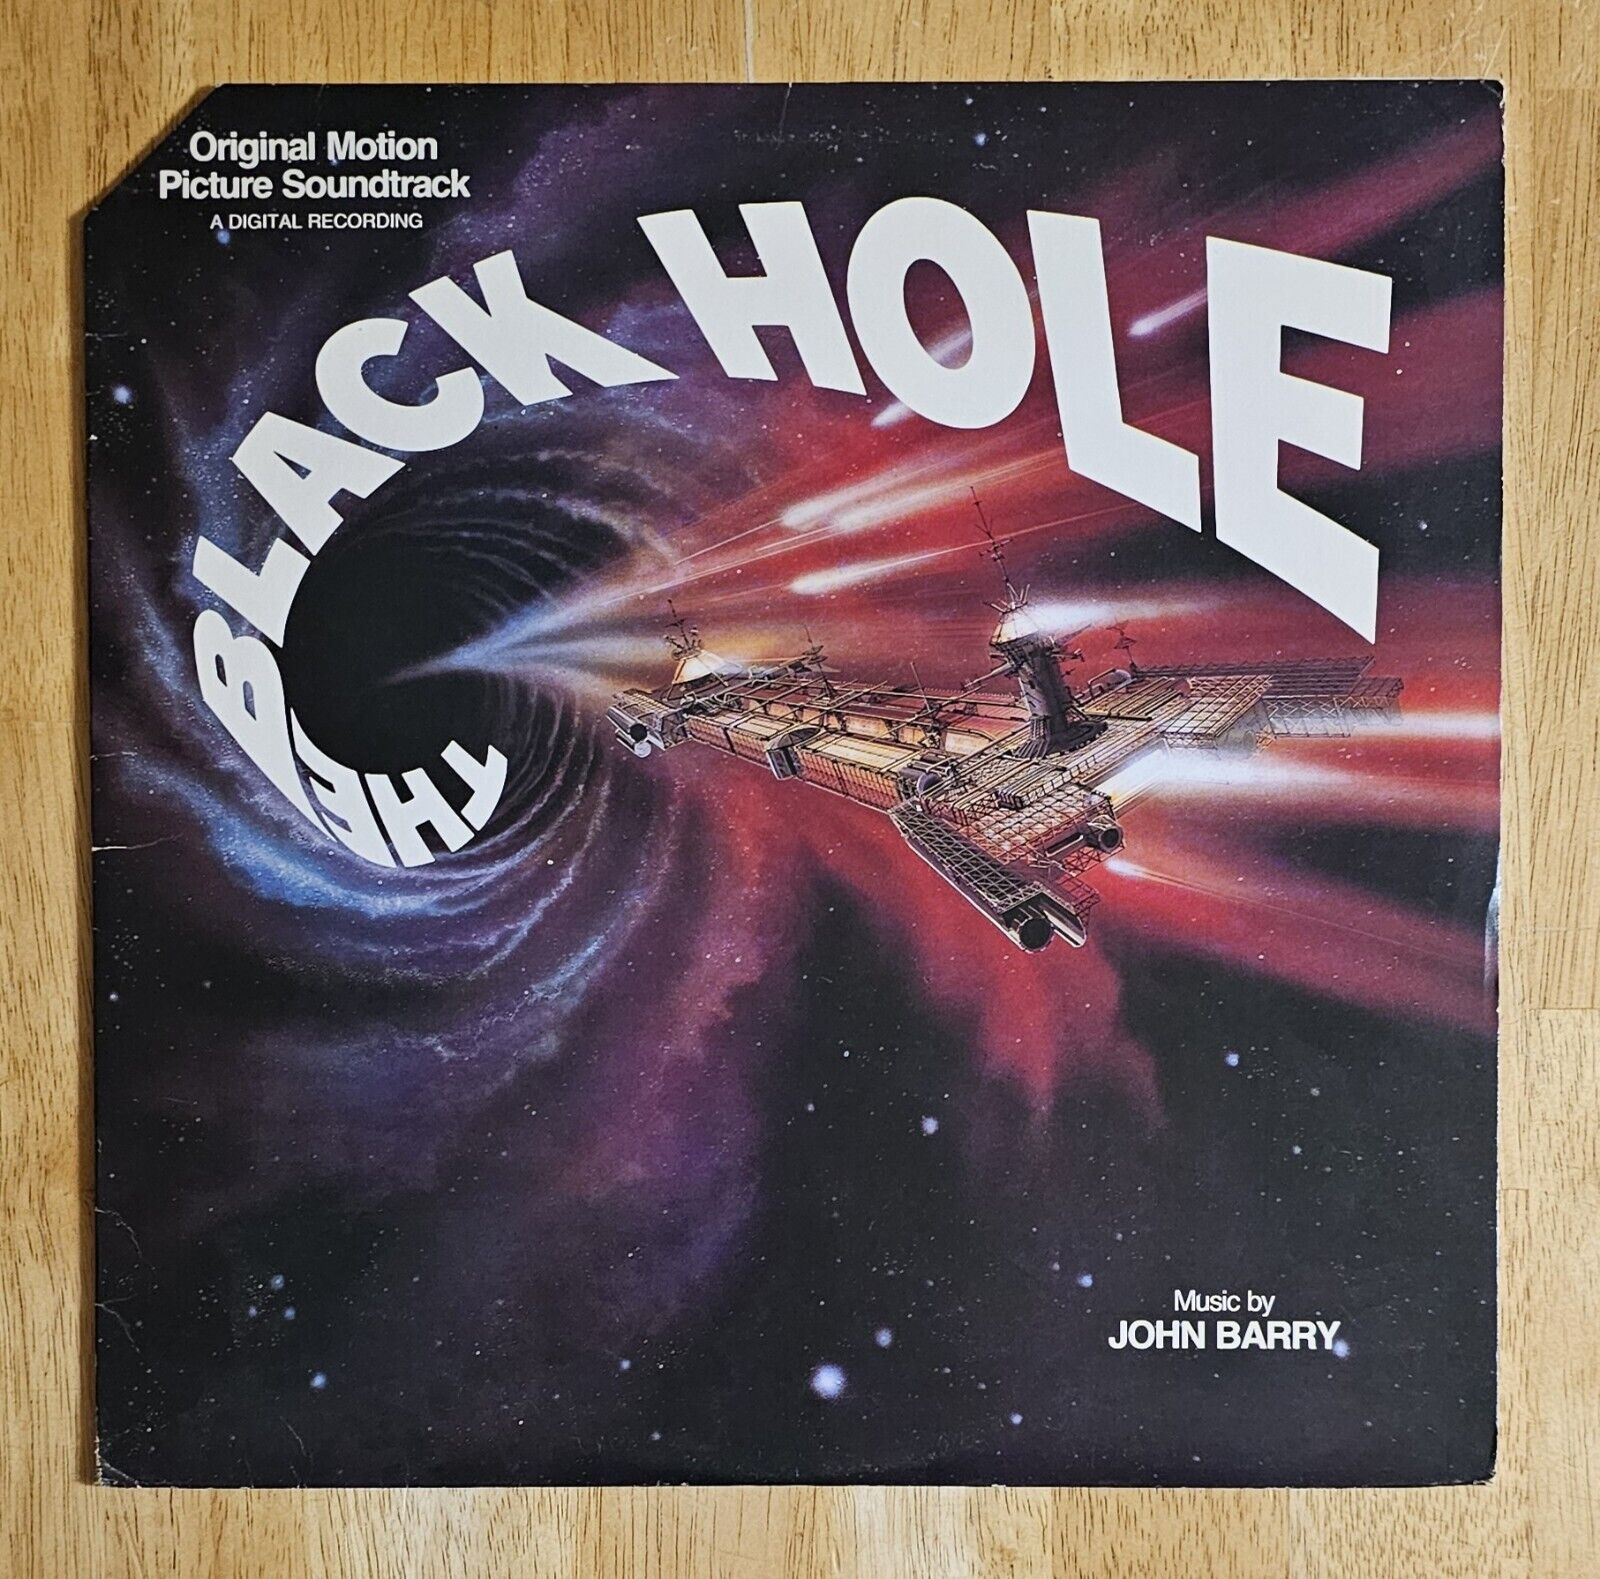 The Black Hole Soundtrack  Vintage Vinyl LP Record VG+ Walt Disney Pictures RARE